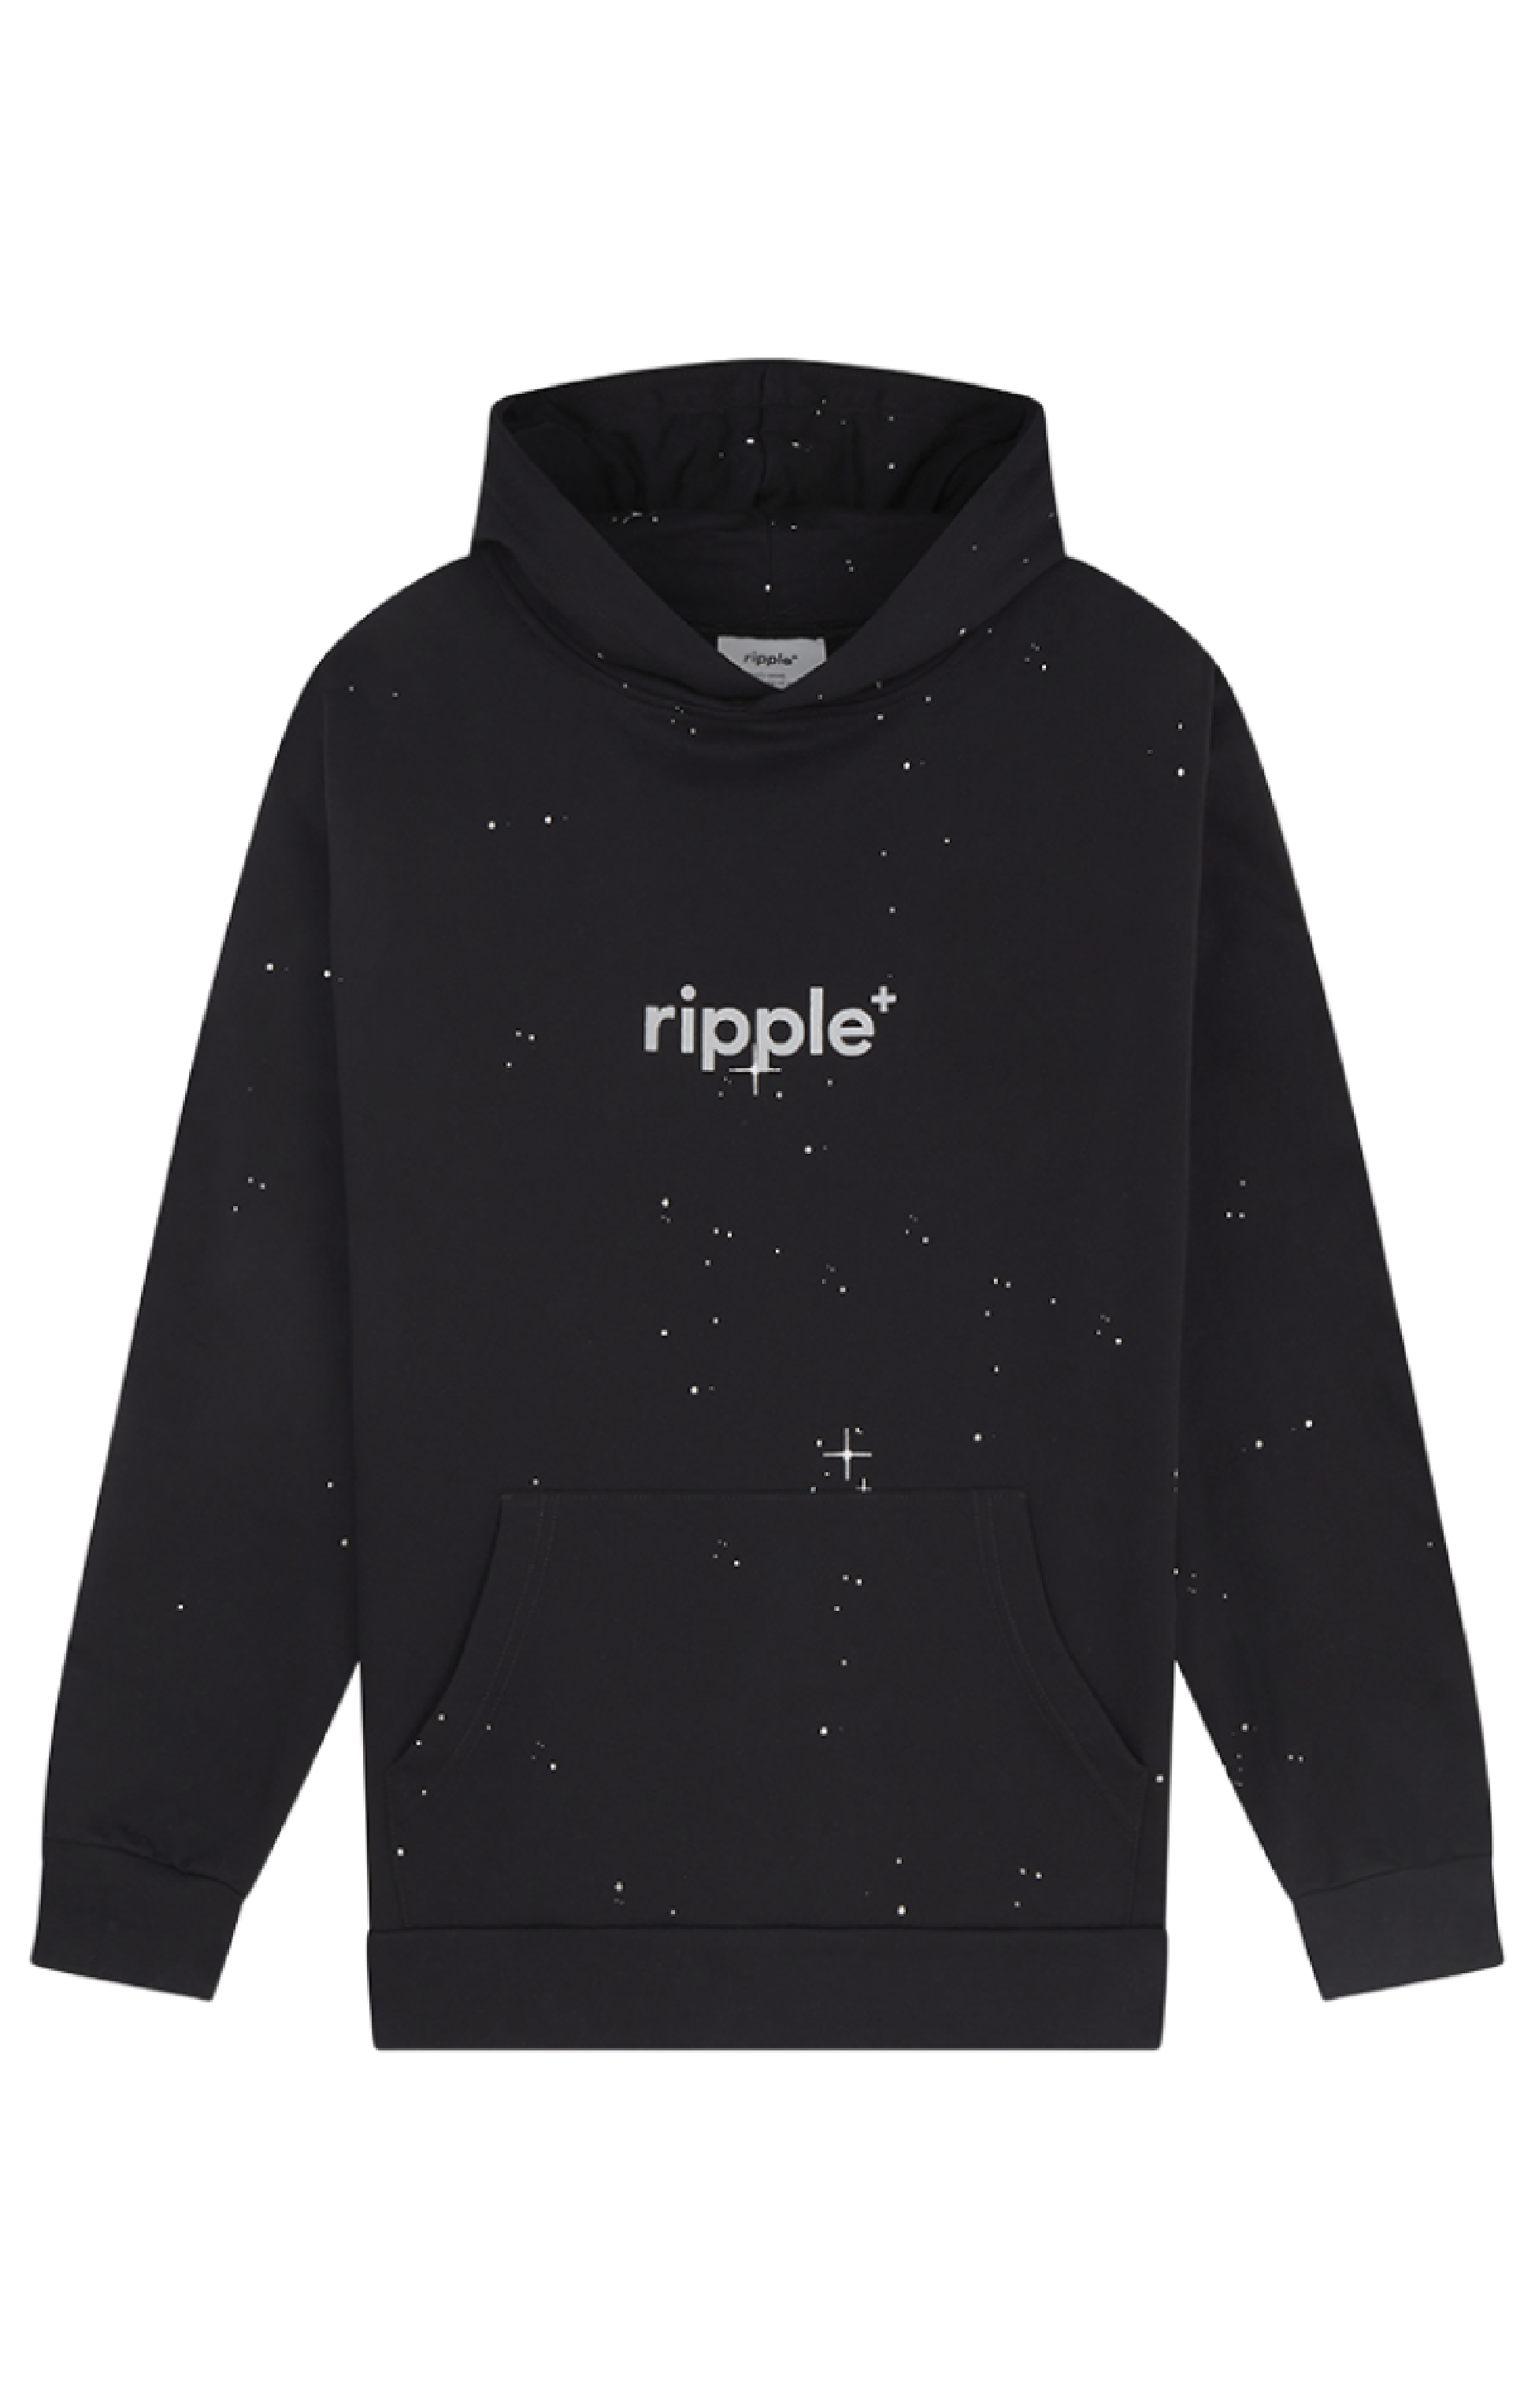 Ripple+ hooded pullover